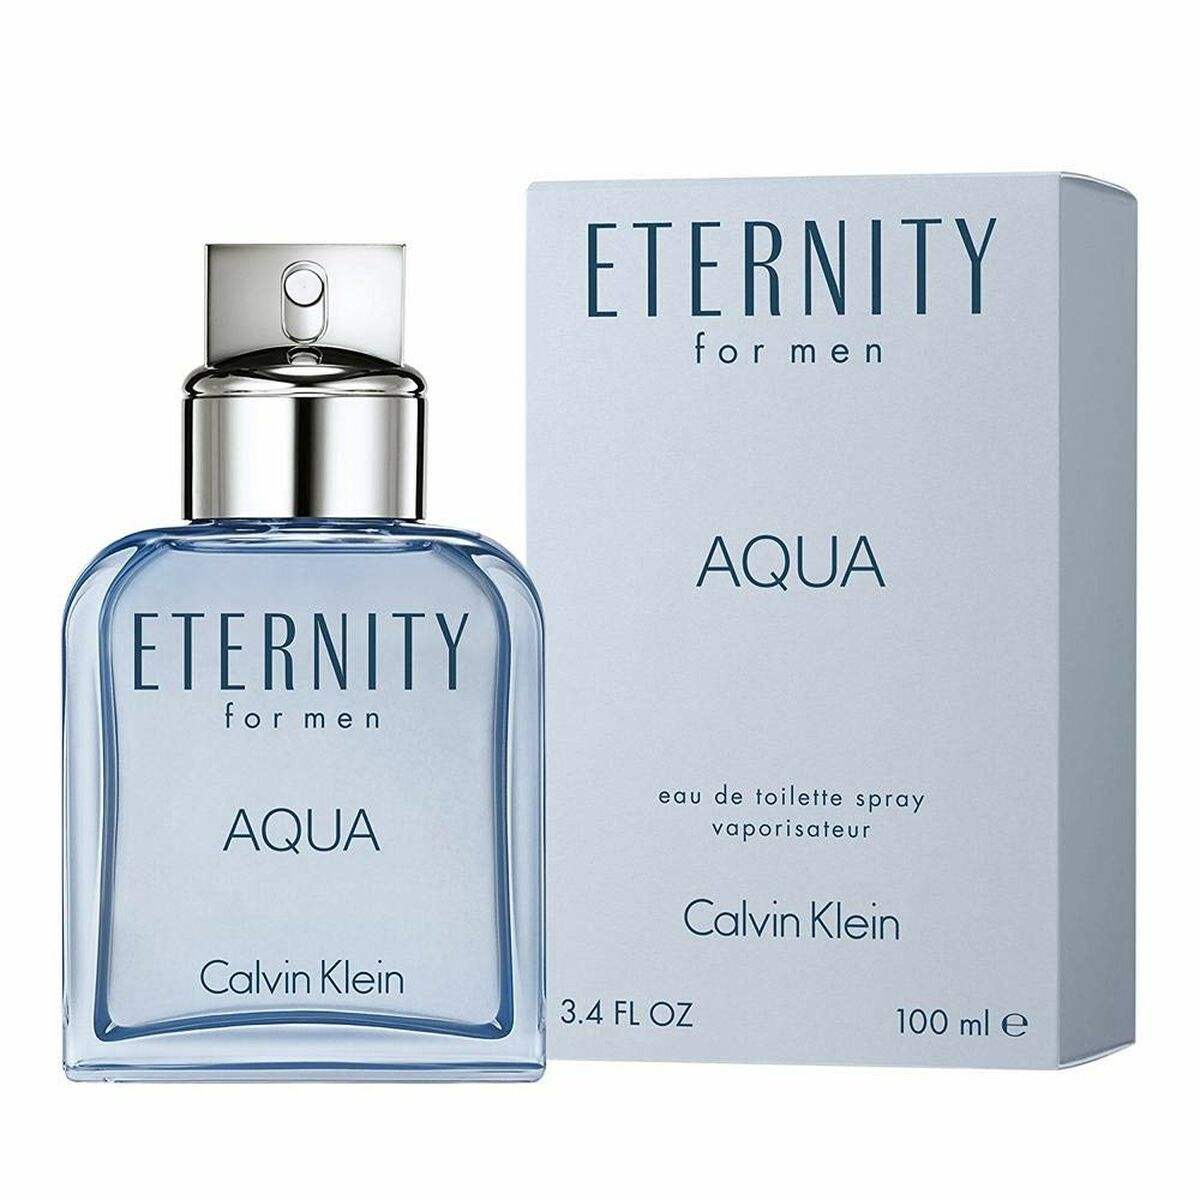 Parfum Homme Calvin Klein EDT Eternity Aqua 100 ml - Calvin Klein - Jardin D'Eyden - jardindeyden.fr